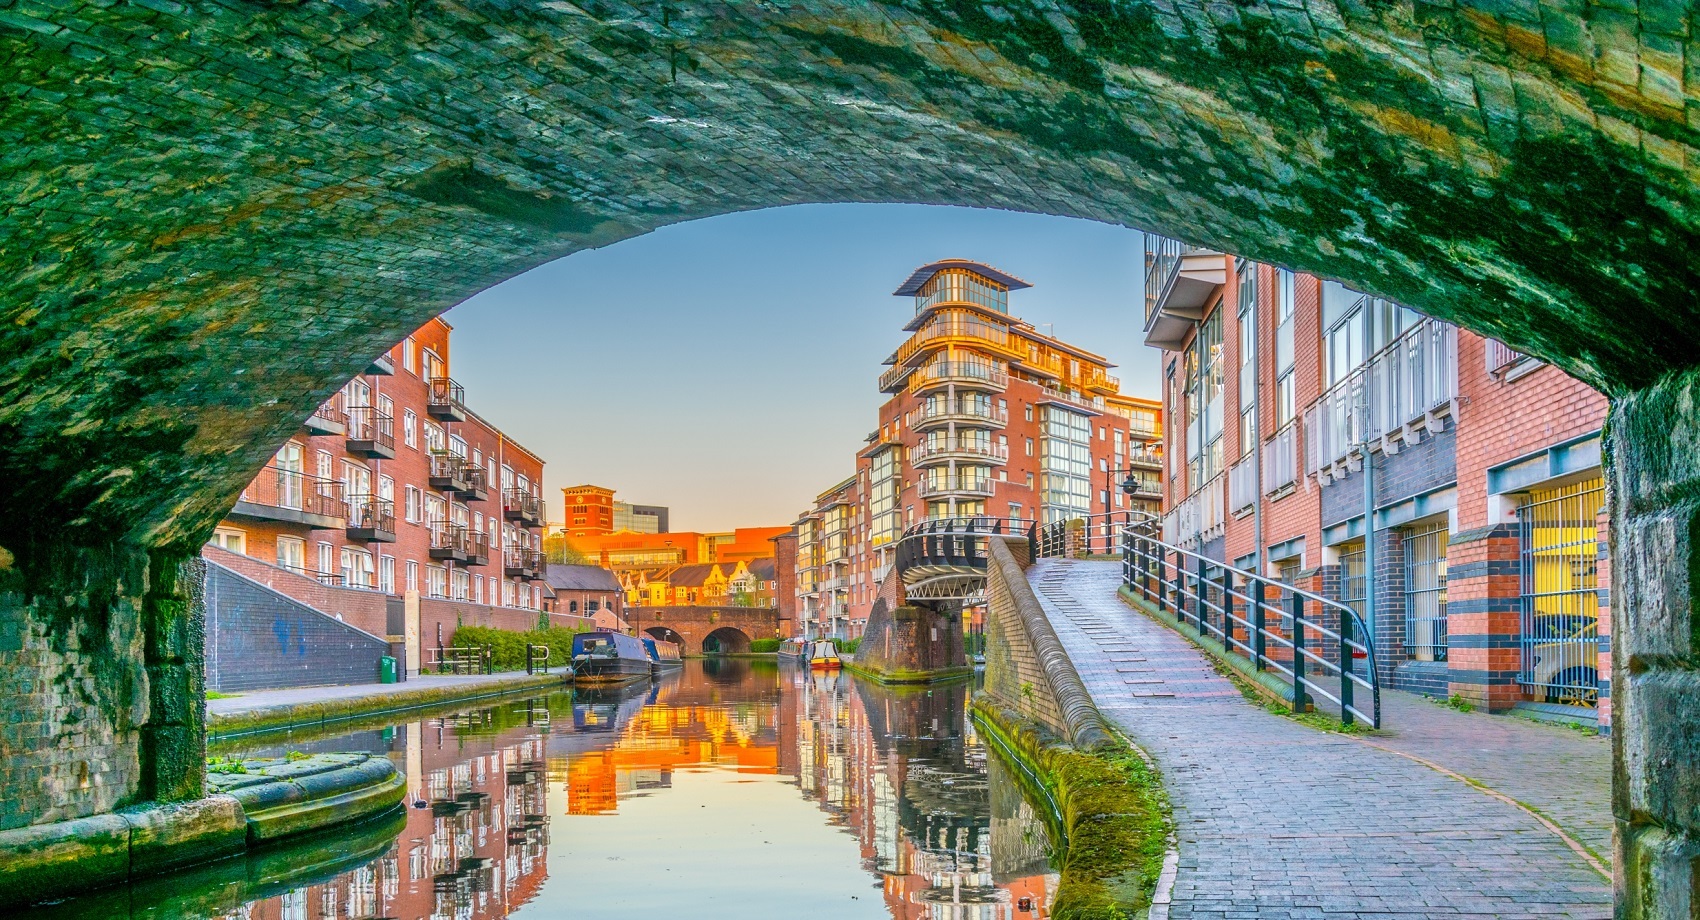 Canal Birmingham